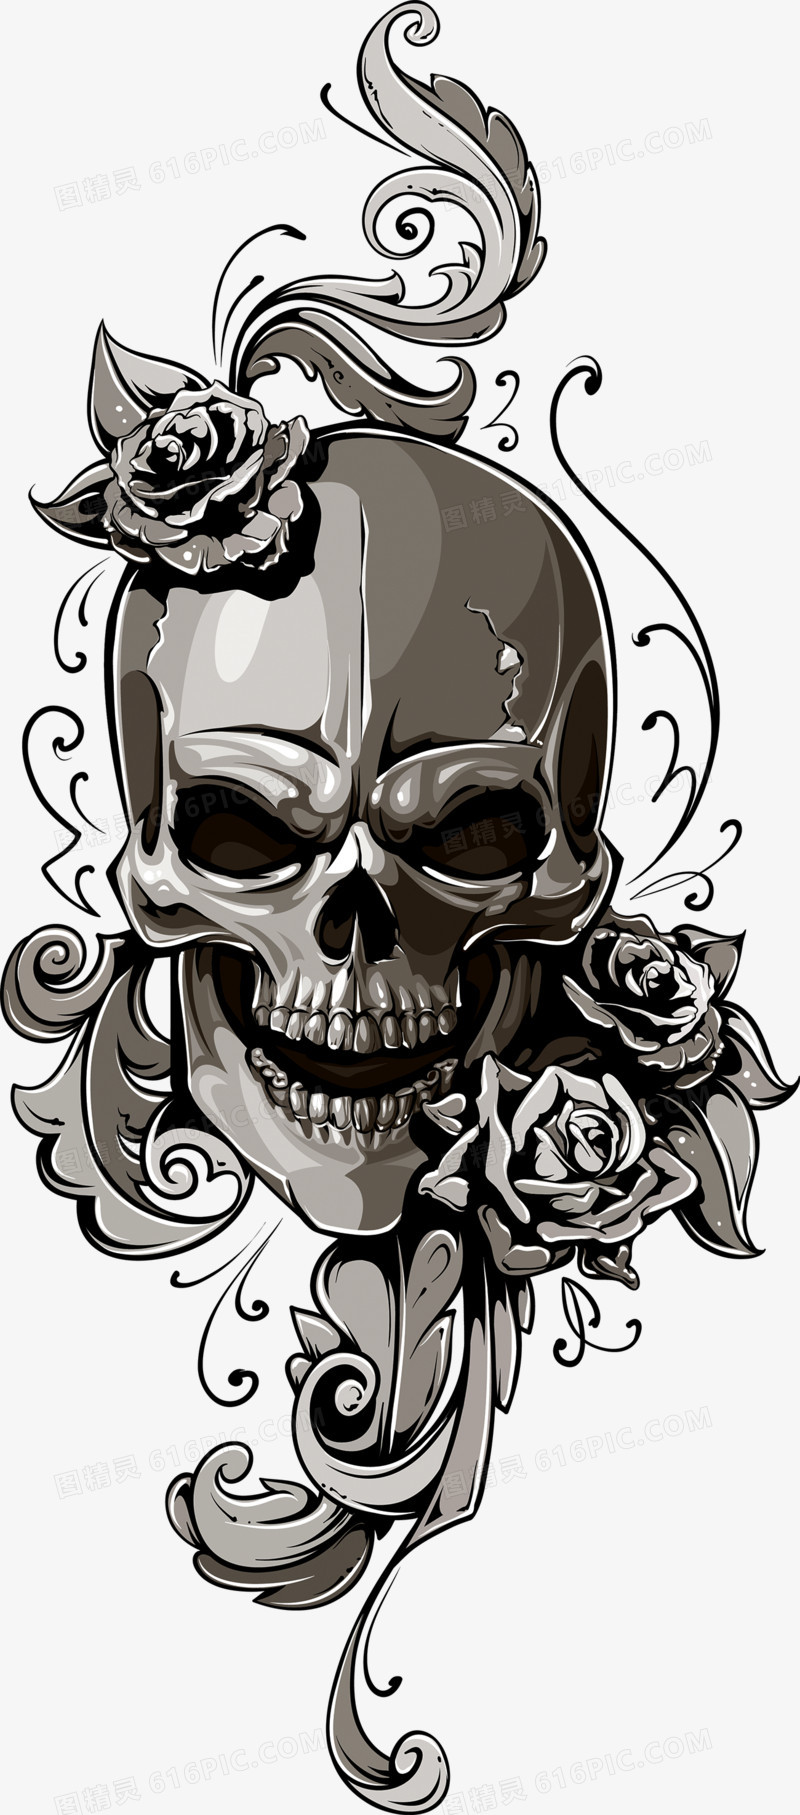 关键词:骷髅骨头恐怖人骨人头图精灵为您提供骷髅免费下载,本设计作品